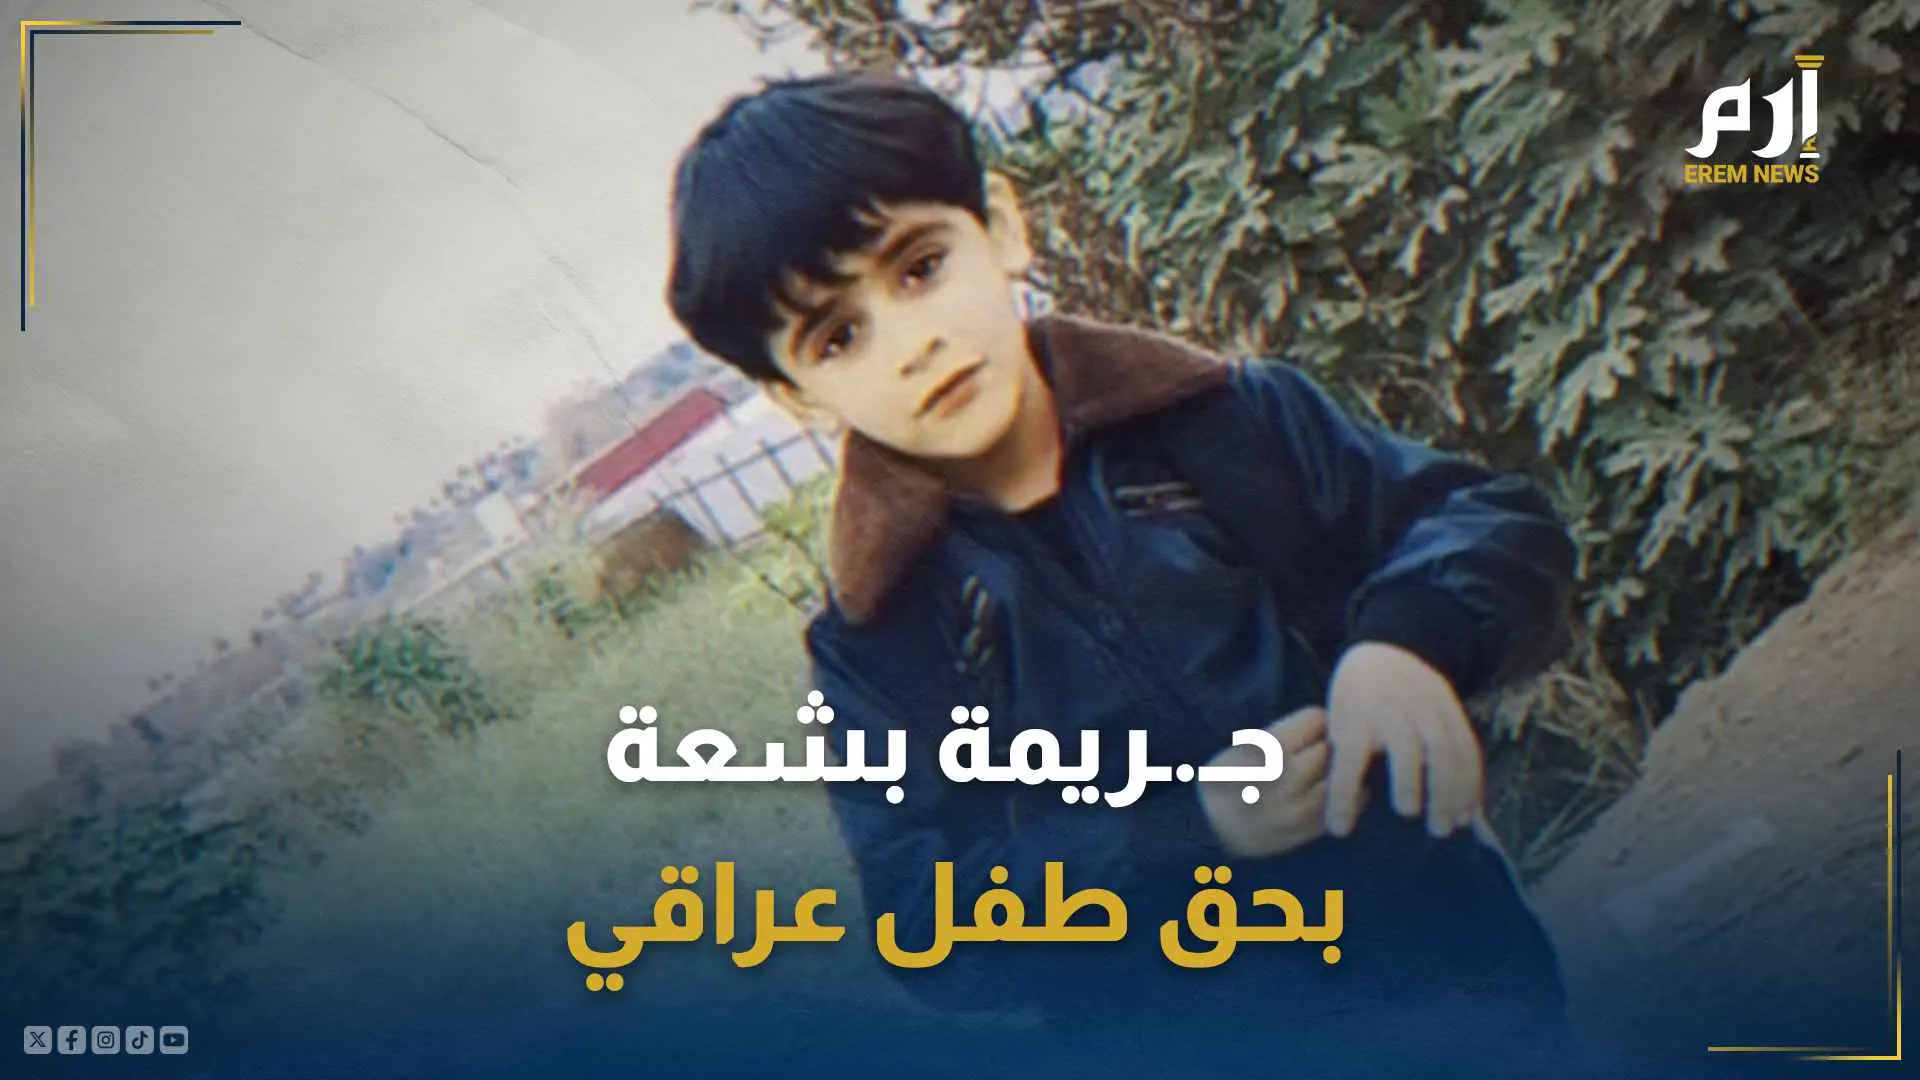 جريمة بشعة بحق طفل عراقي .. تكشف وحشية غير مسبوقة